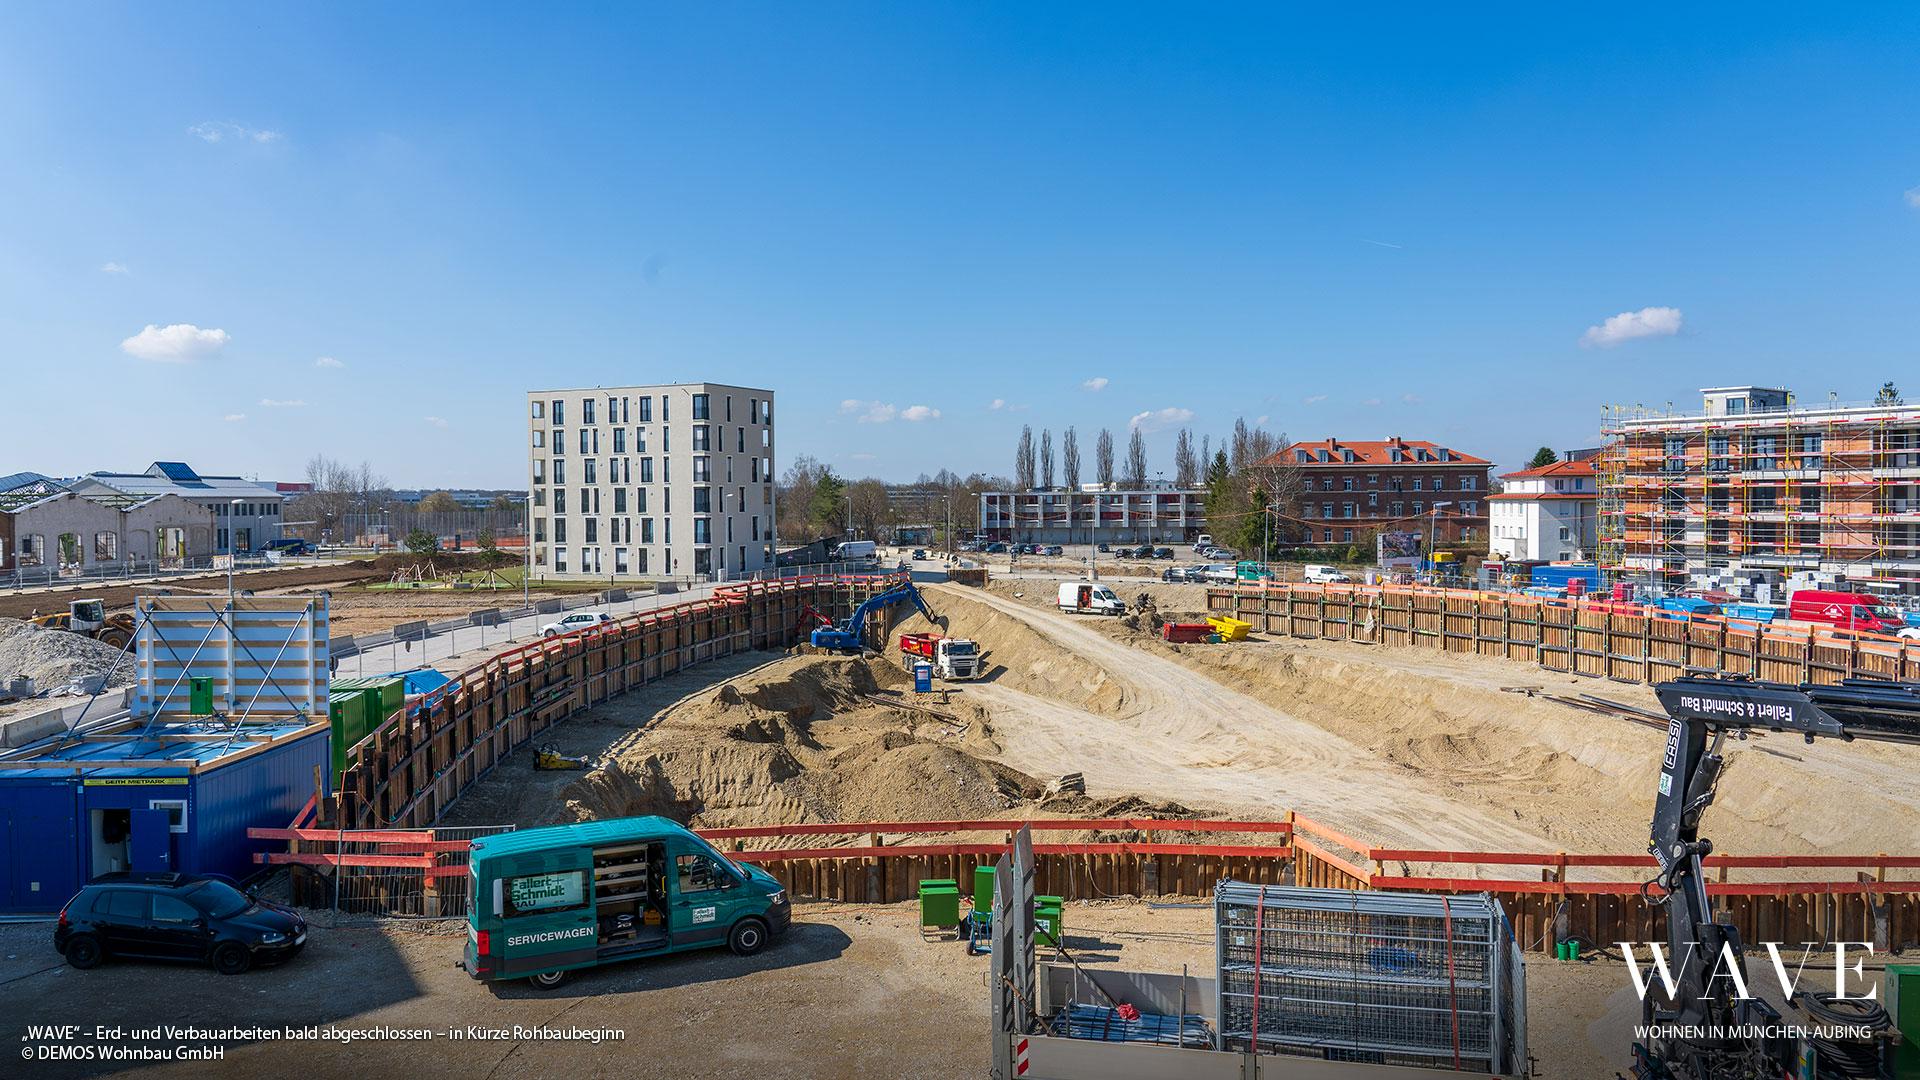 „WAVE“ in München-Aubing: Verbau- und Erdarbeiten bald abgeschlossen – In Kürze Rohbaubeginn